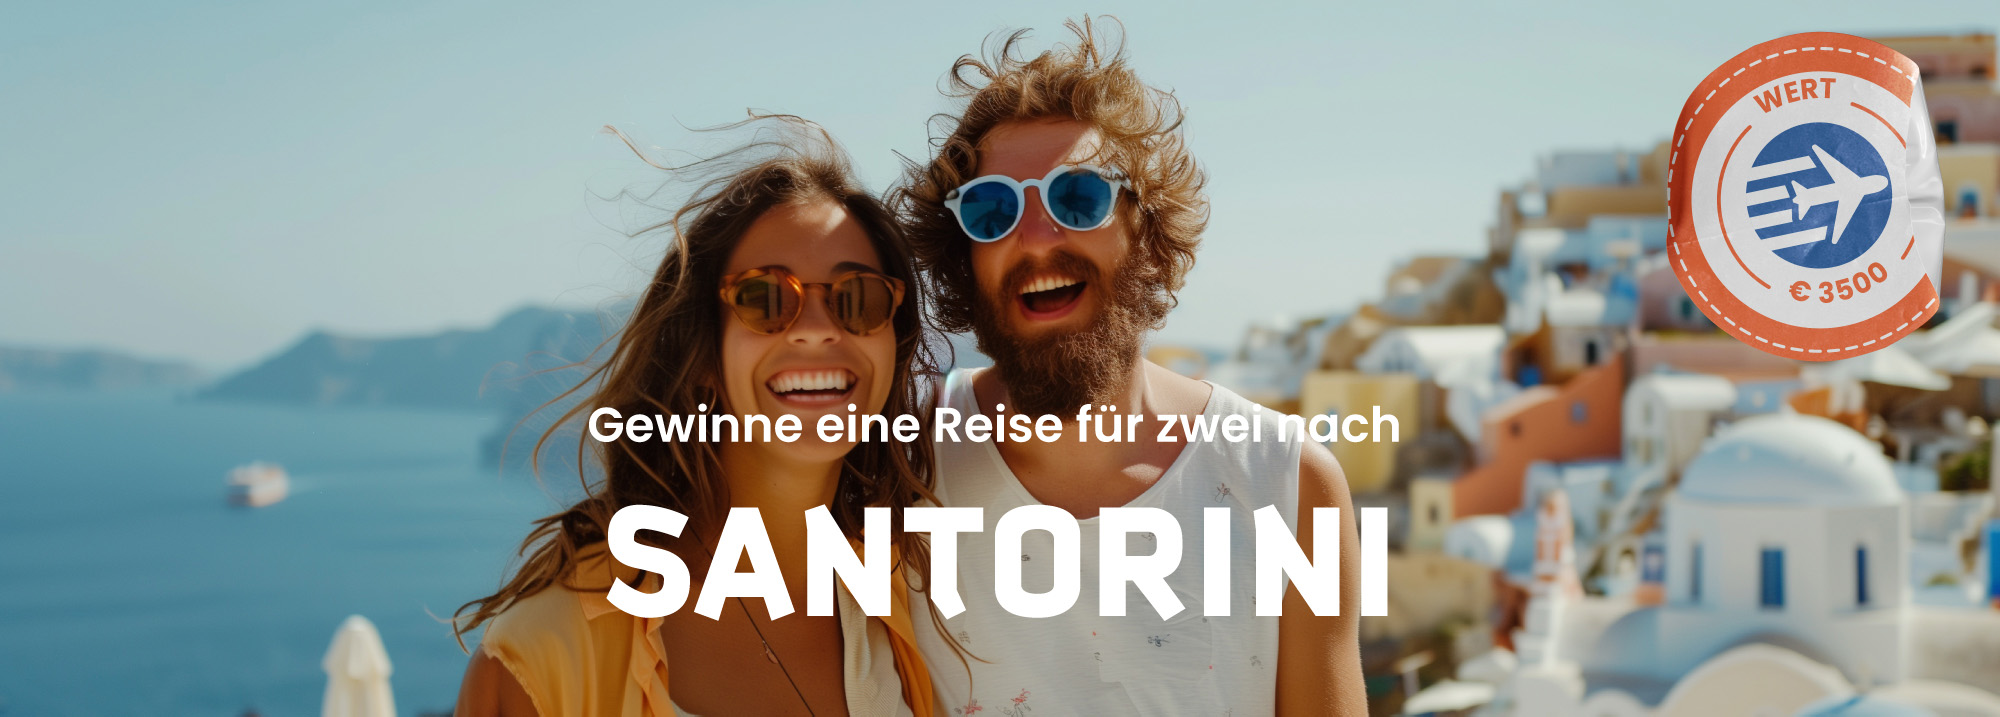 Gewinne eine Reise für zwei nach Santorini